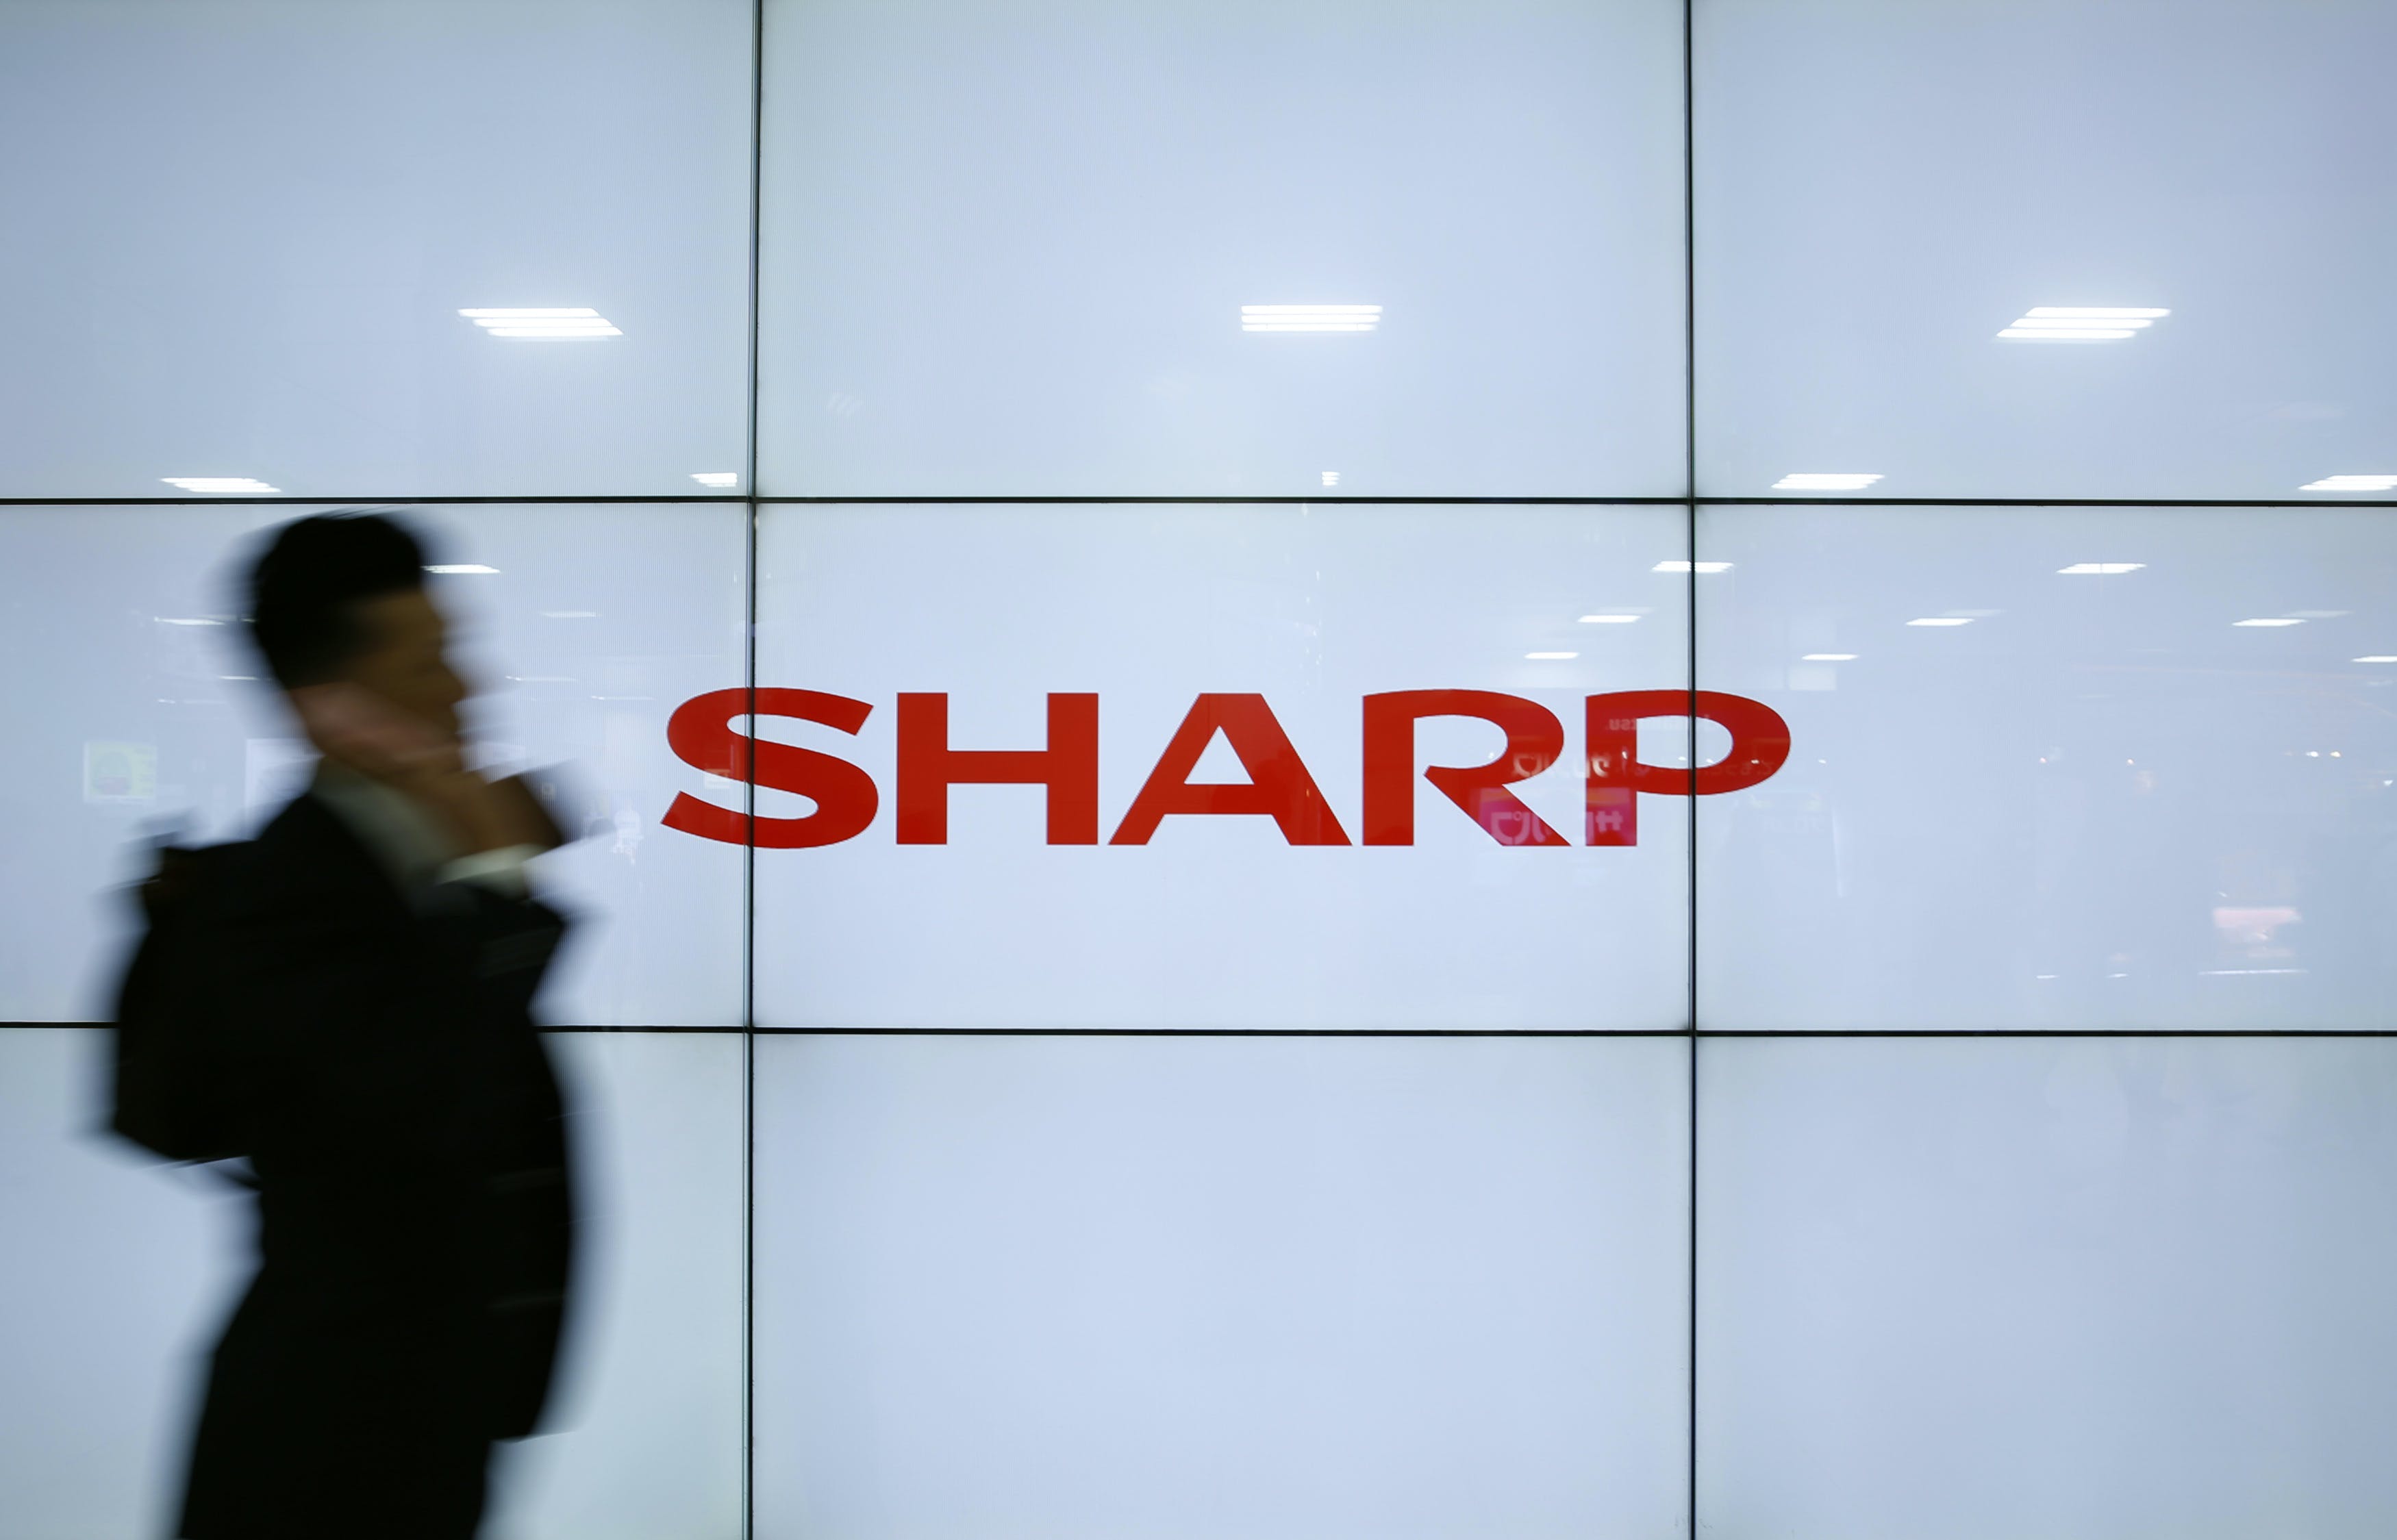 夏普＿A man using his mobile phone walks past Sharp Corp's liquid crystal display monitors showing the company logo in Tokyo